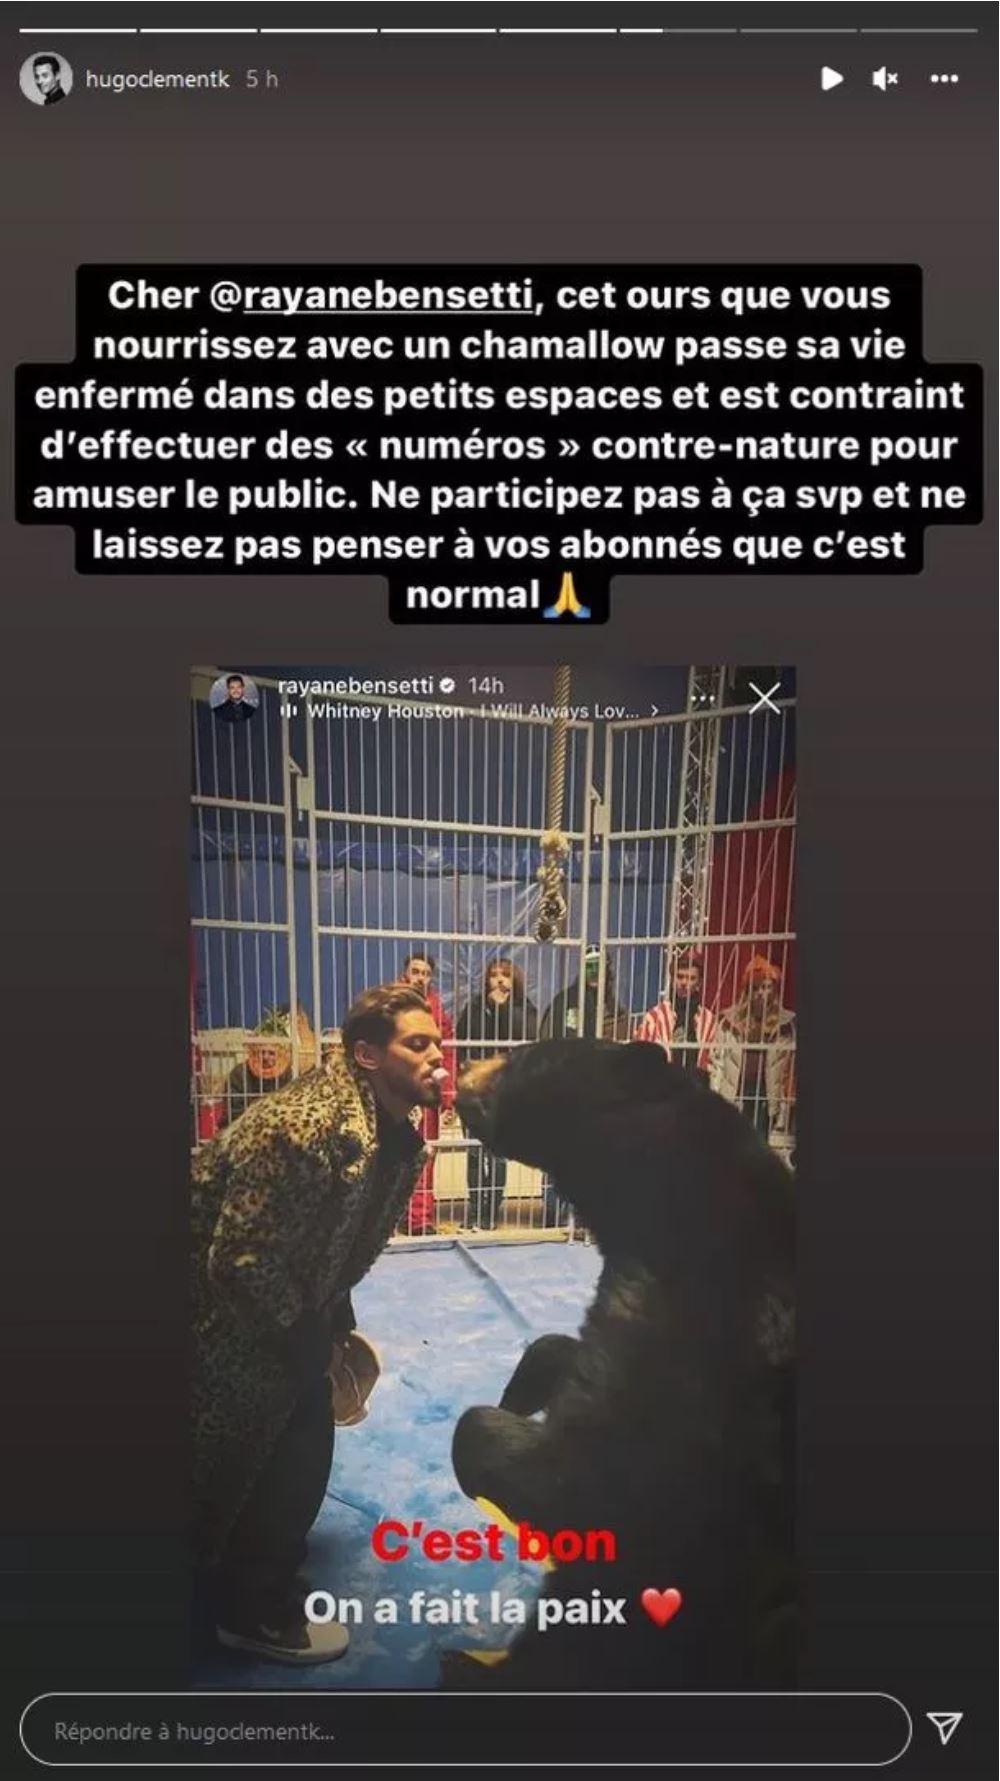  Hugo Clément interpelle Rayane Bensetti @Instagram